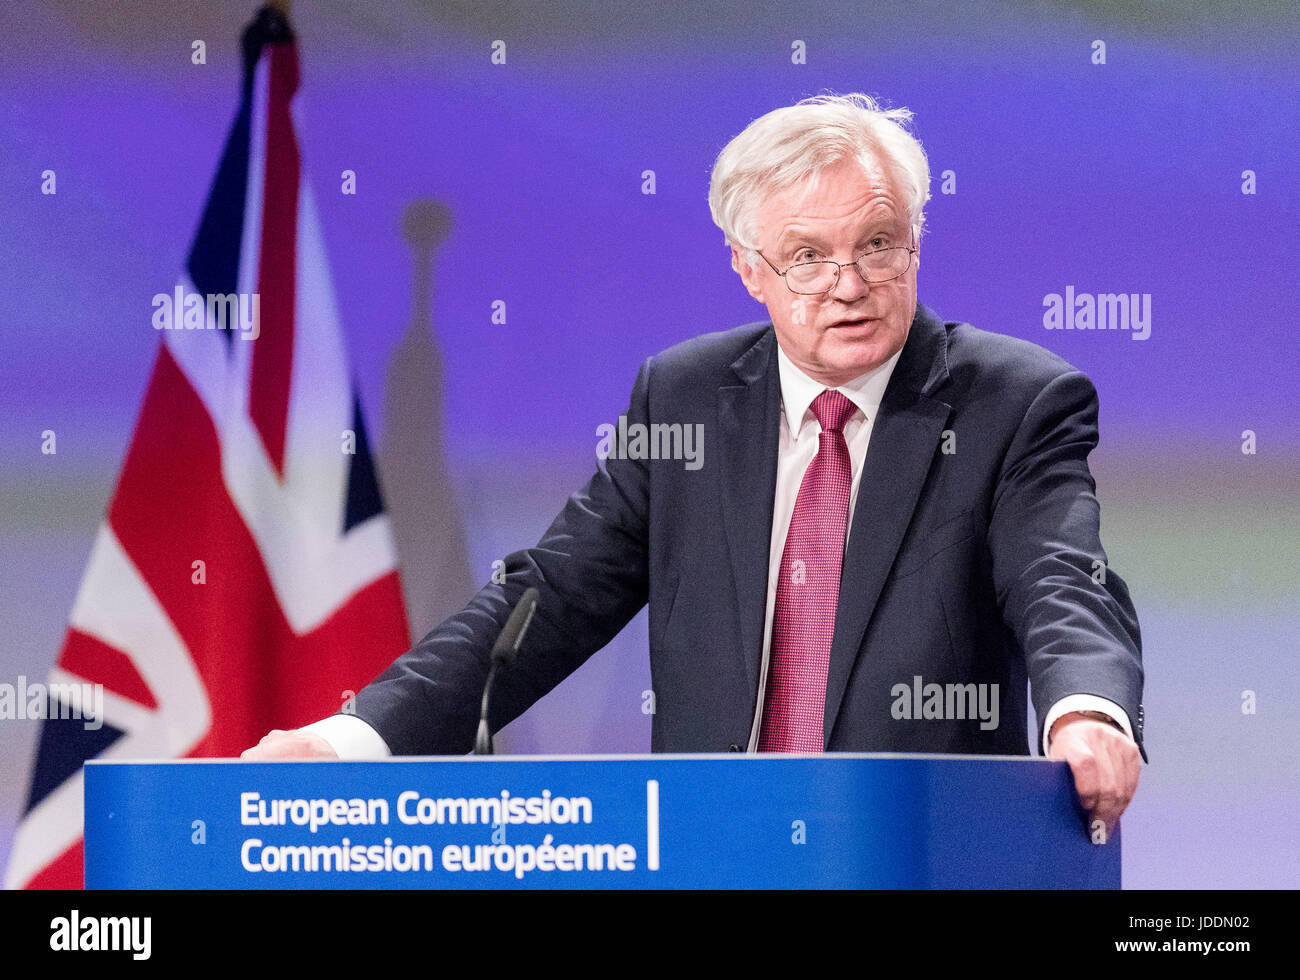 Bruxelles, Belgio. 19 giugno 2017. David Davis, segretario di Stato per la chiusura dell'Unione europea, conferenza stampa Credito: Andia/Alamy Live News Foto Stock